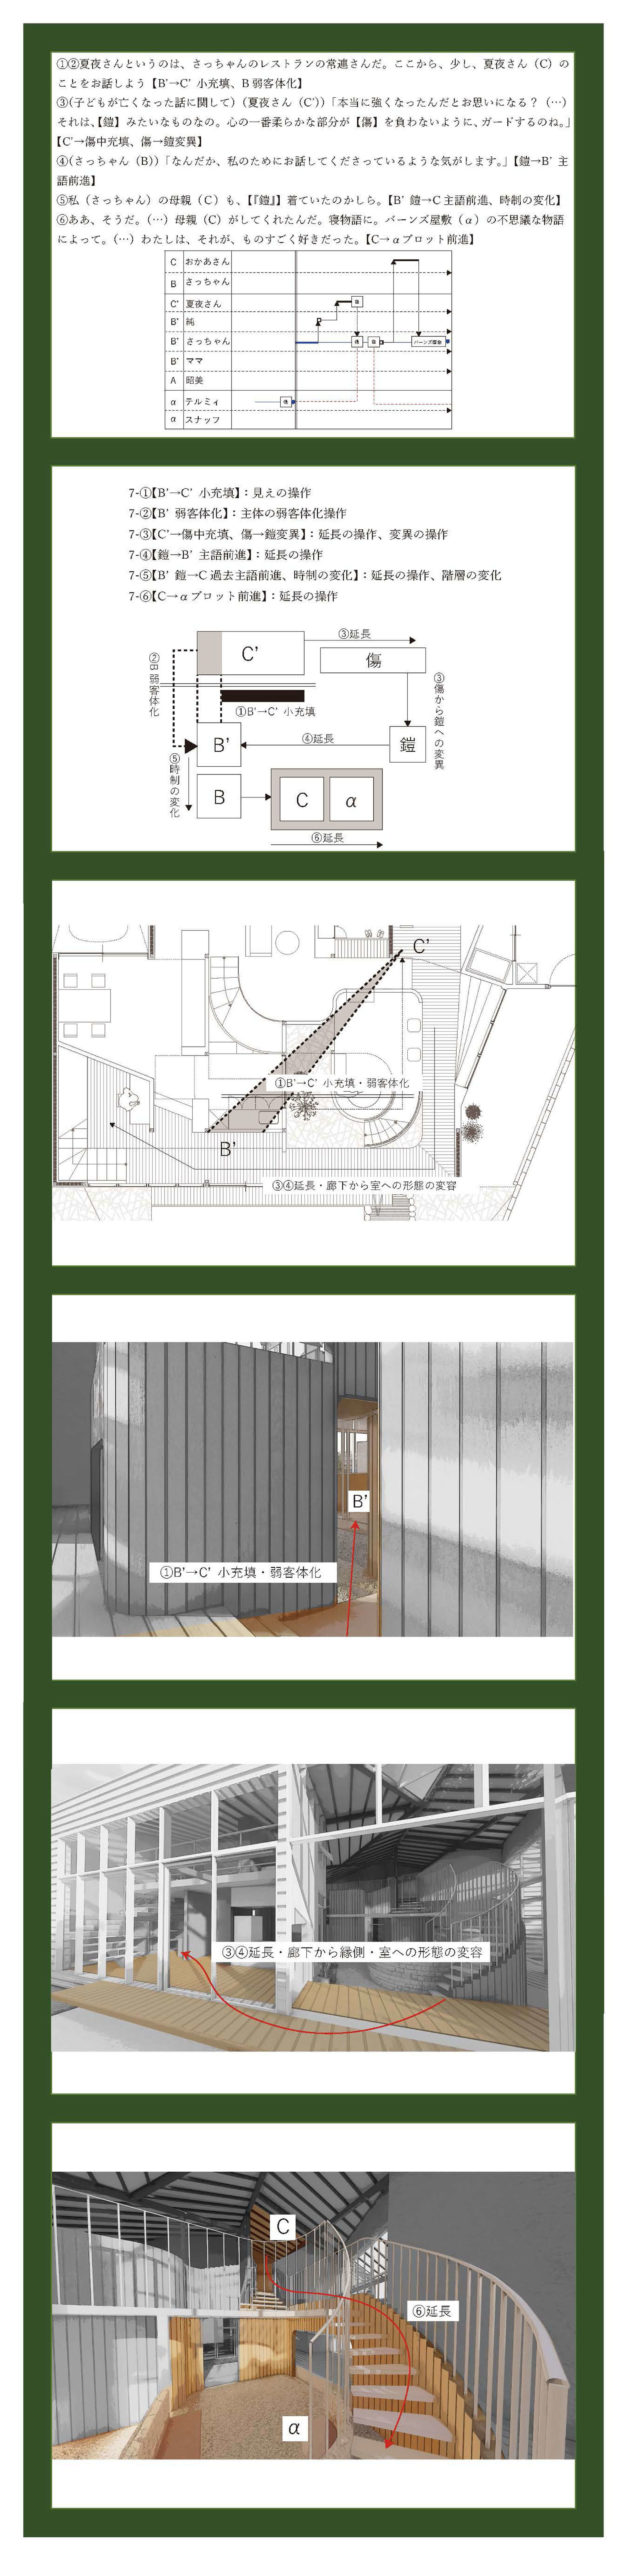 小説構造を応用した建築の提案 -梨木香歩『裏庭』の分析を通して--9